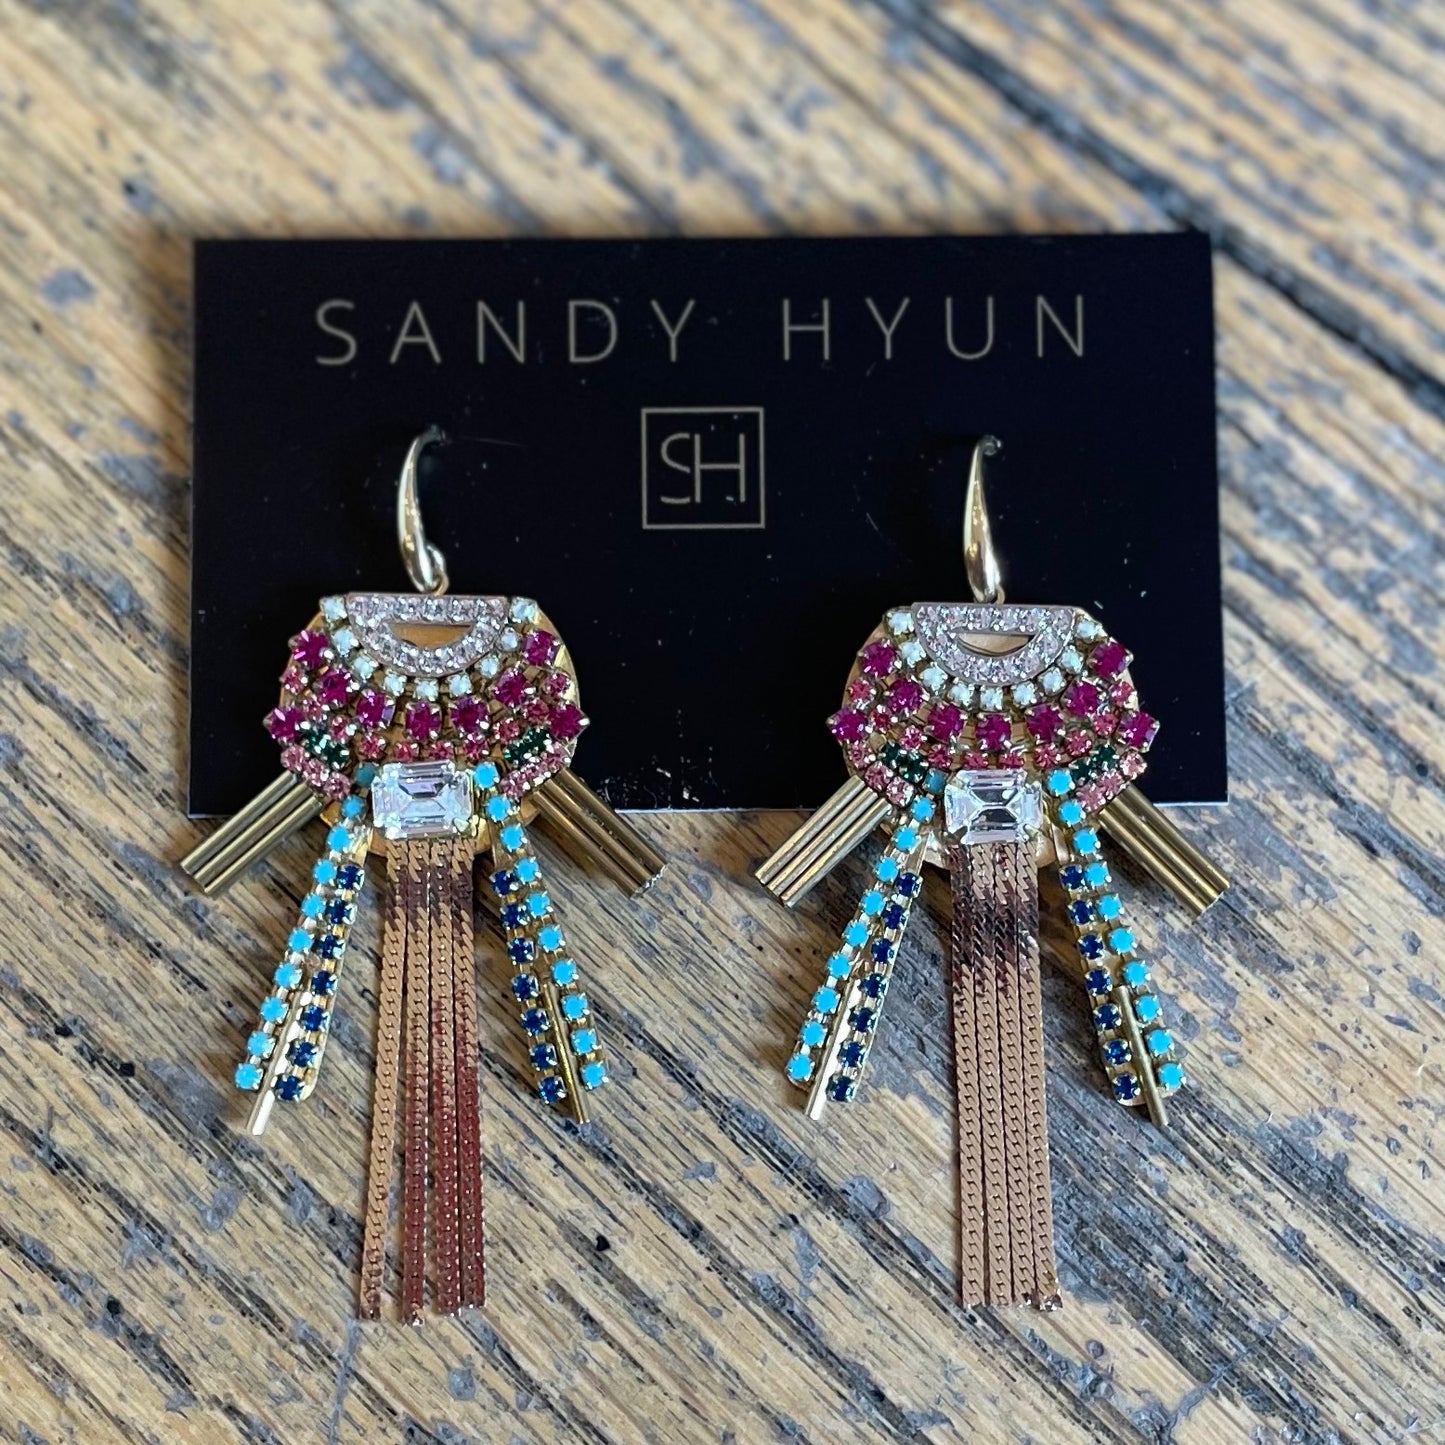 Sandy Hyun Art Deco Earrings